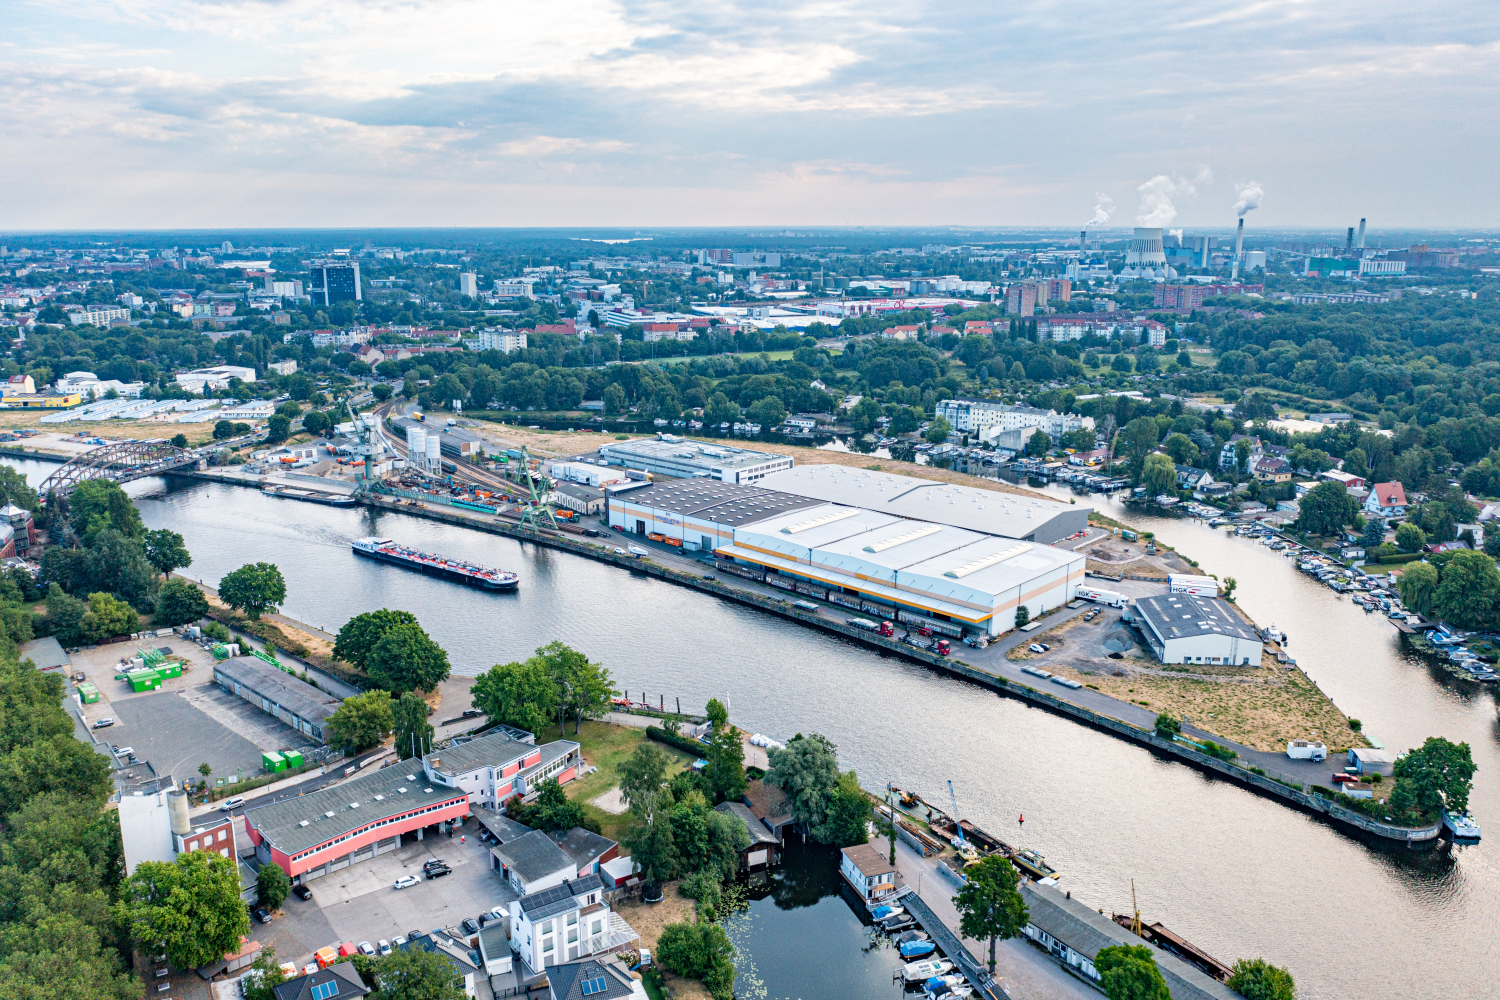 Luftbildaufnahme des Südhafens mit Schulenburgbrücke, Havel und Umgebung des Gebiets sind zu sehen.